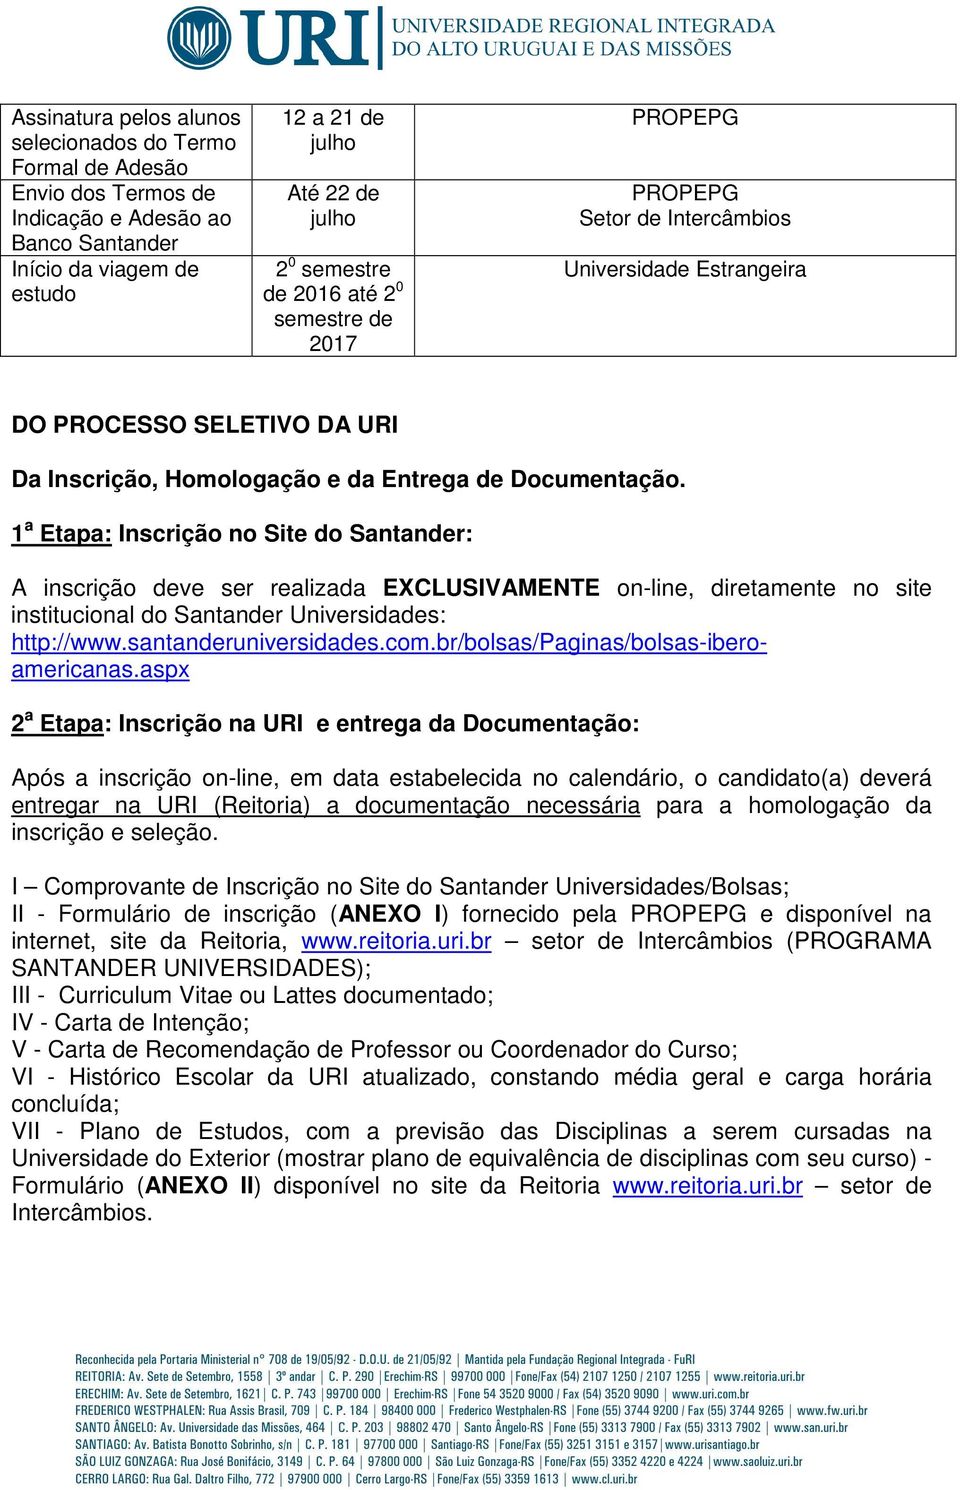 1 a Etapa: Inscrição no Site do Santander: A inscrição deve ser realizada EXCLUSIVAMENTE on-line, diretamente no site institucional do Santander Universidades: http://www.santanderuniversidades.com.